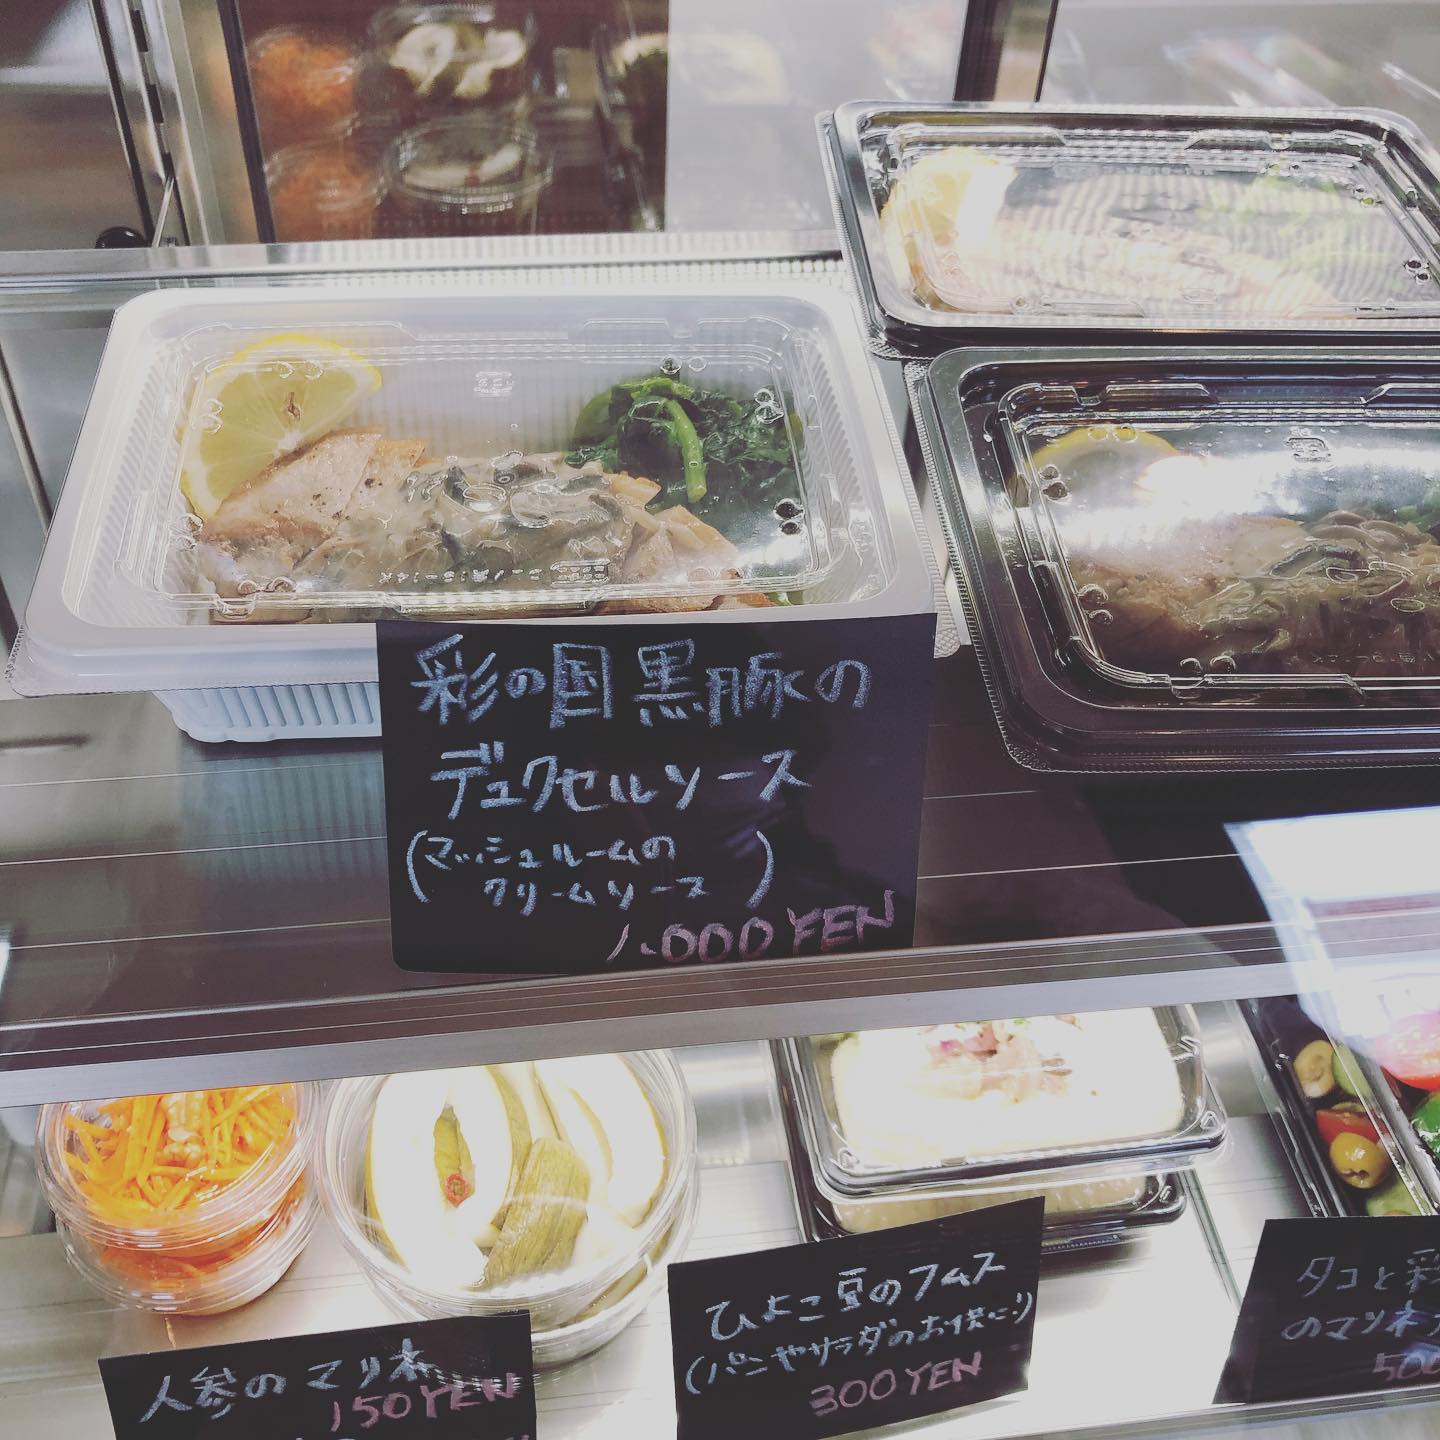 今週のお惣菜です！
彩の国黒豚のグリルは、
今回テイクアウトでの特別価格ですー！
よろしくお願いします！